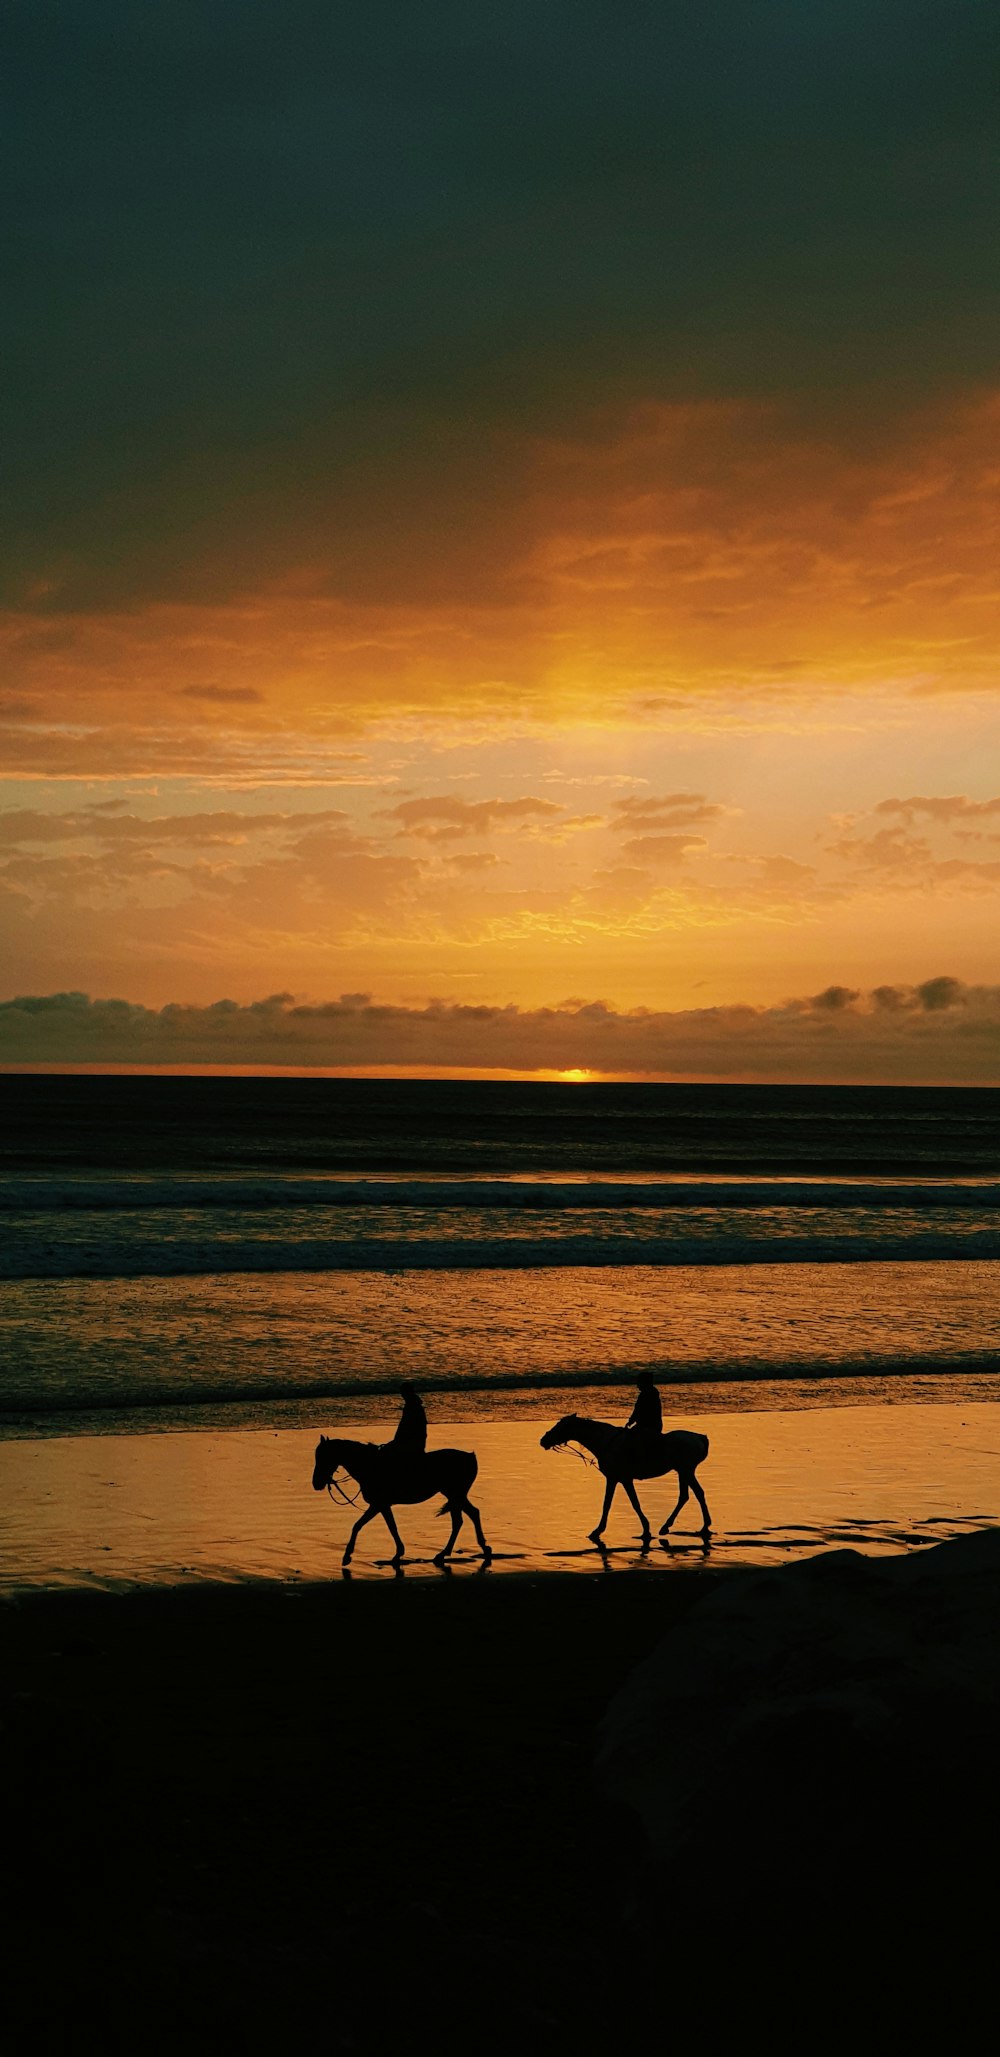 silhouette di 2 persone che camminano sulla spiaggia durante il tramonto